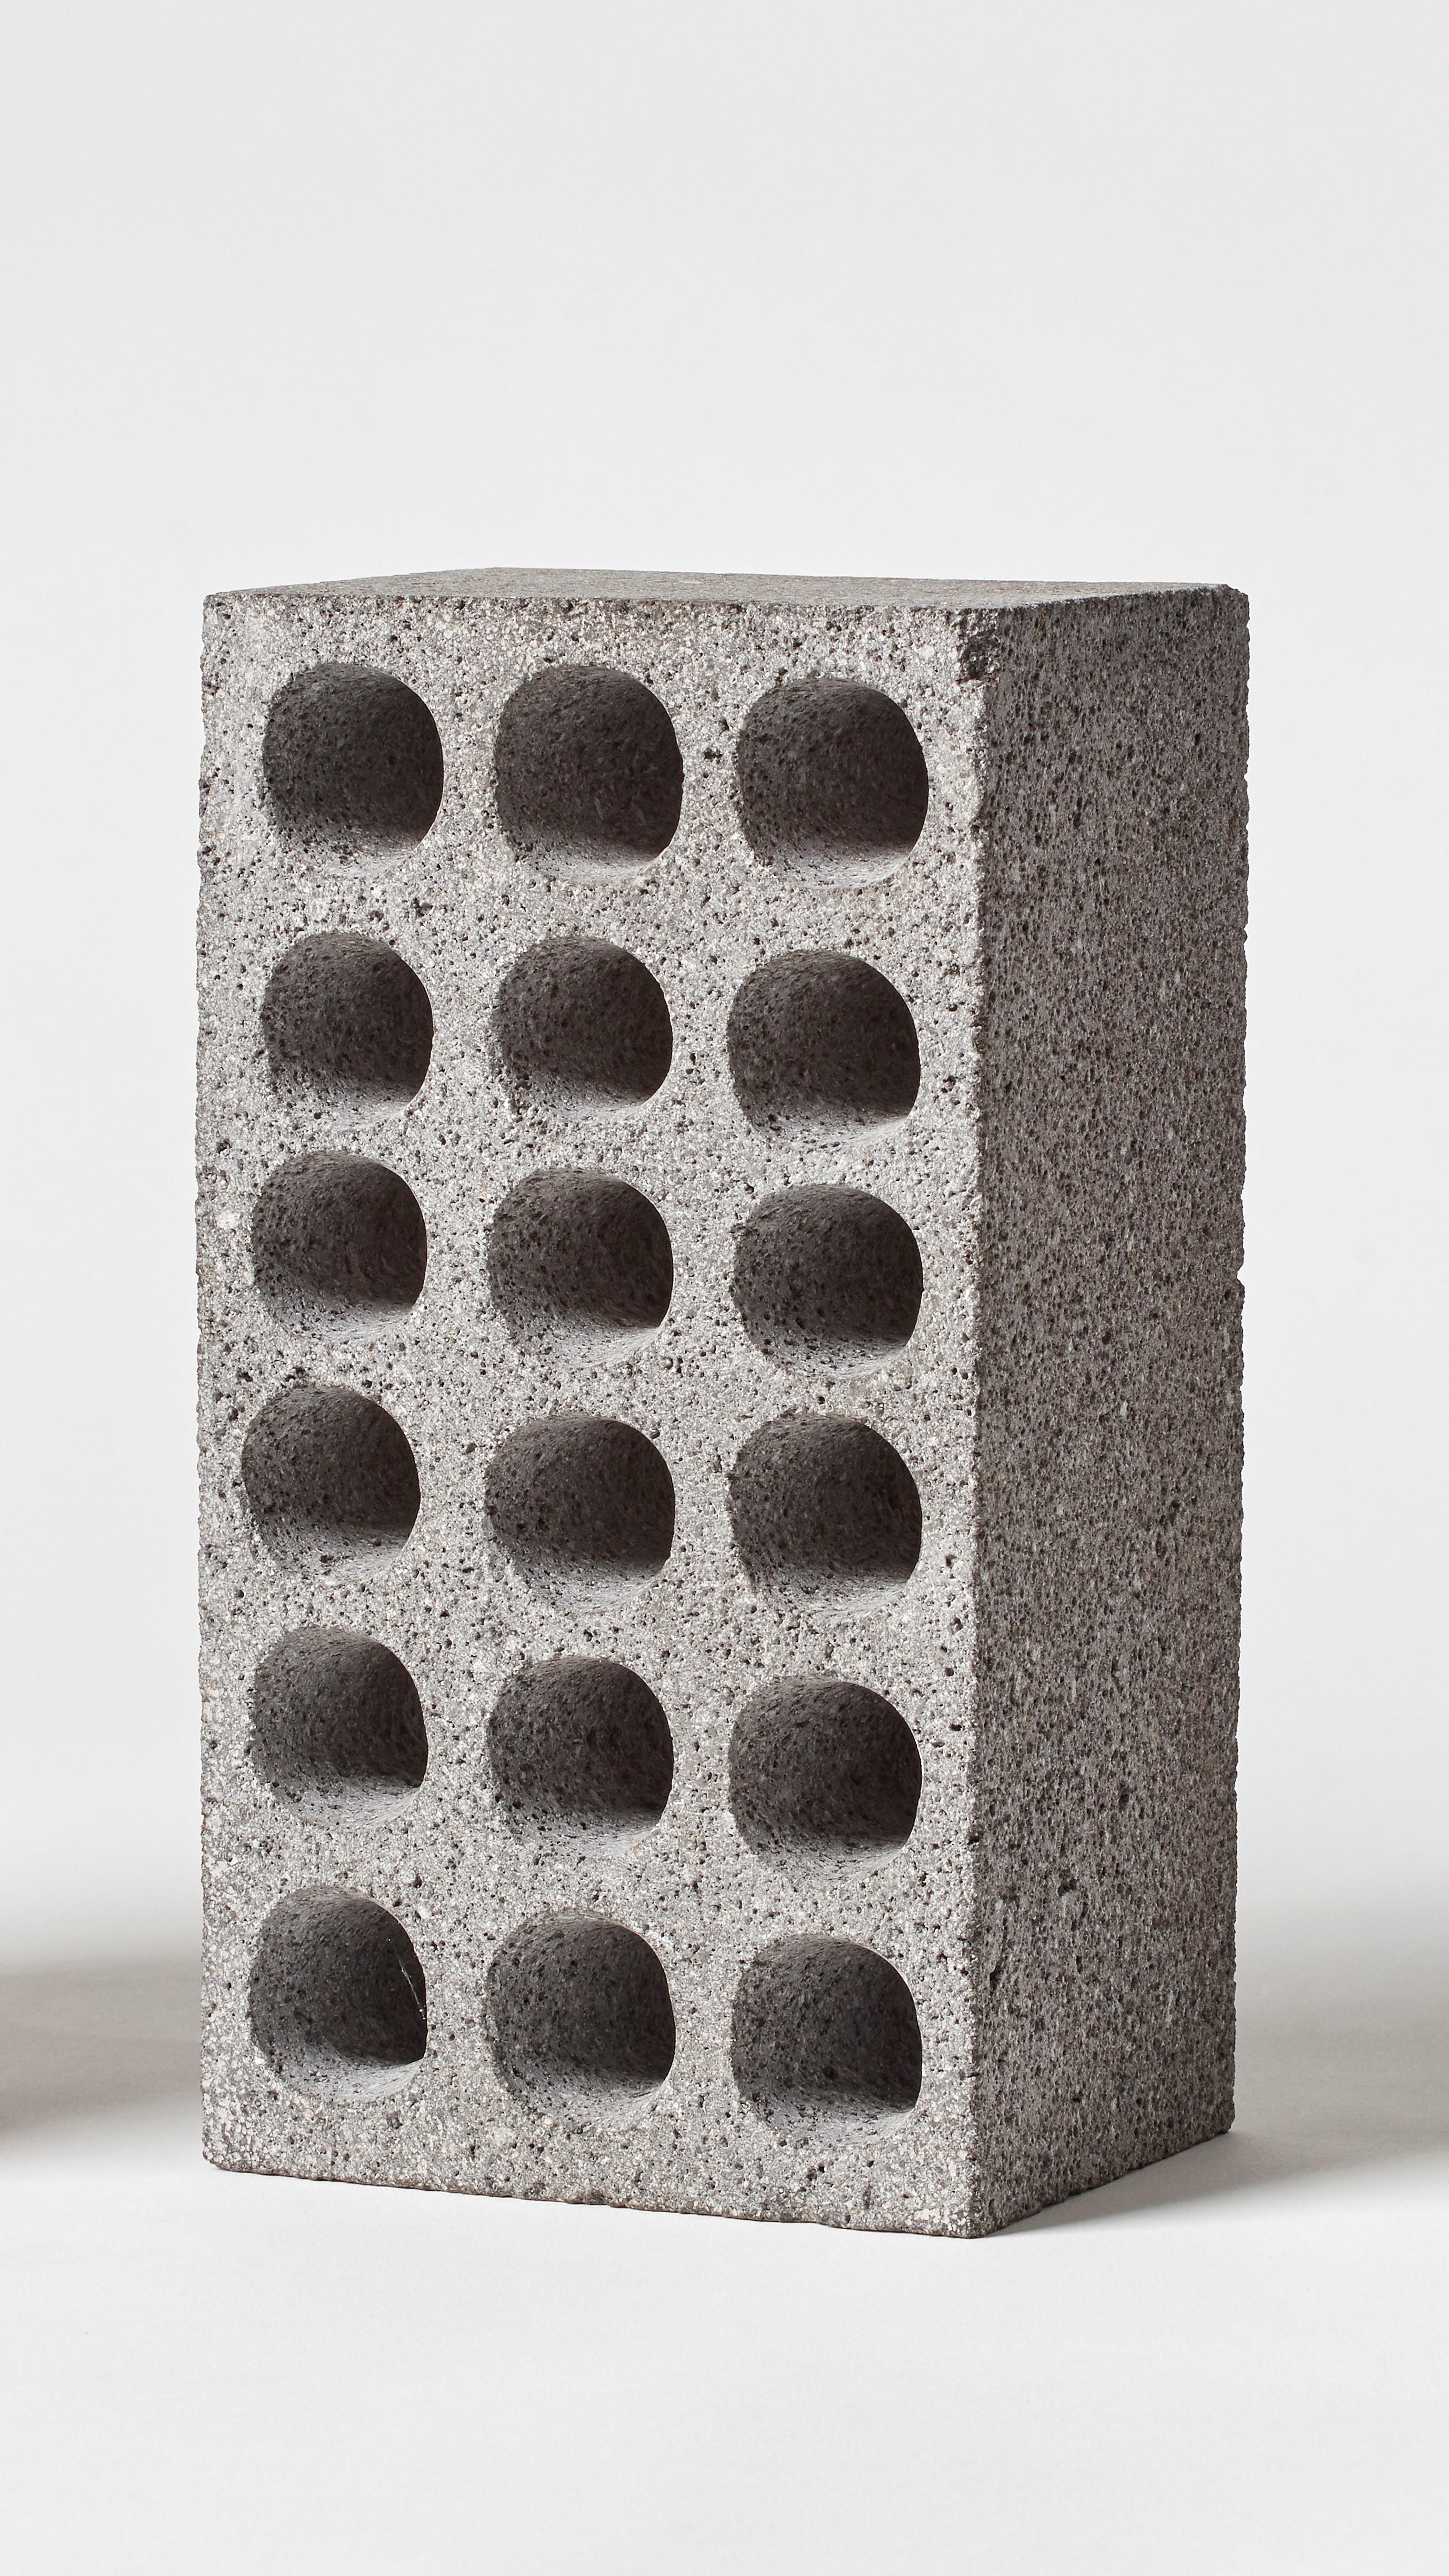 BRICK par Estudio Rafael Freyre
Dimensions : L 12,5 P 9 x H 23 cm 
MATERIAL : Pierres des Andes
Également disponible : Autres finitions disponibles.

La brique est un élément constructif générique qui fait partie de l'imaginaire urbain. Au